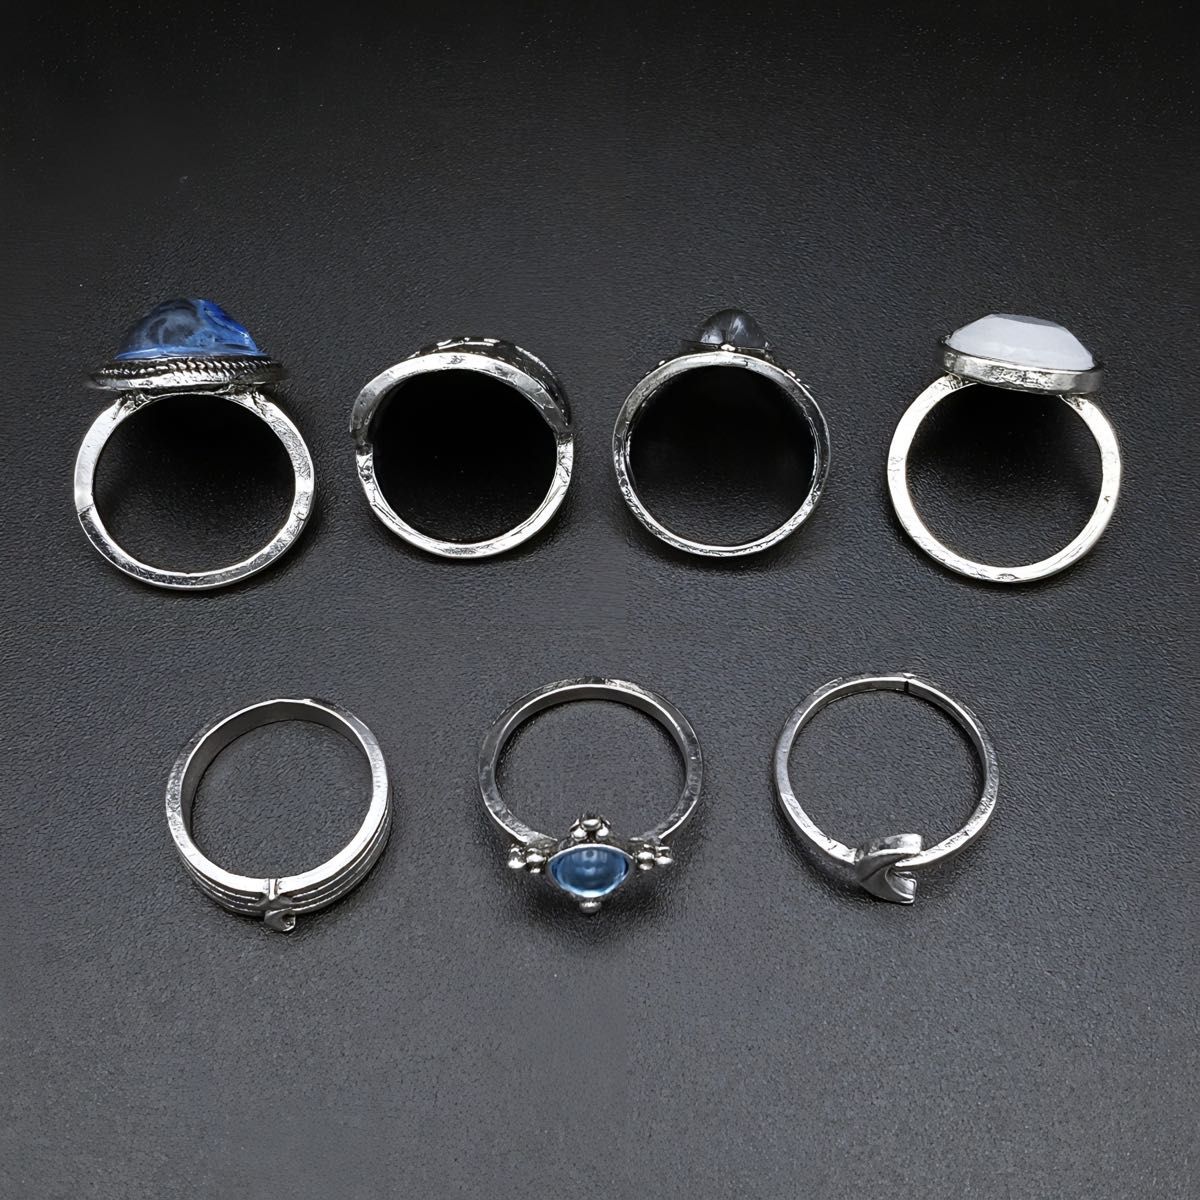 15-13 ファッションリング 7点 セット シルバーカラー レディース 重ねづけ まとめ売り 新品 指輪 韓国 アクセサリー